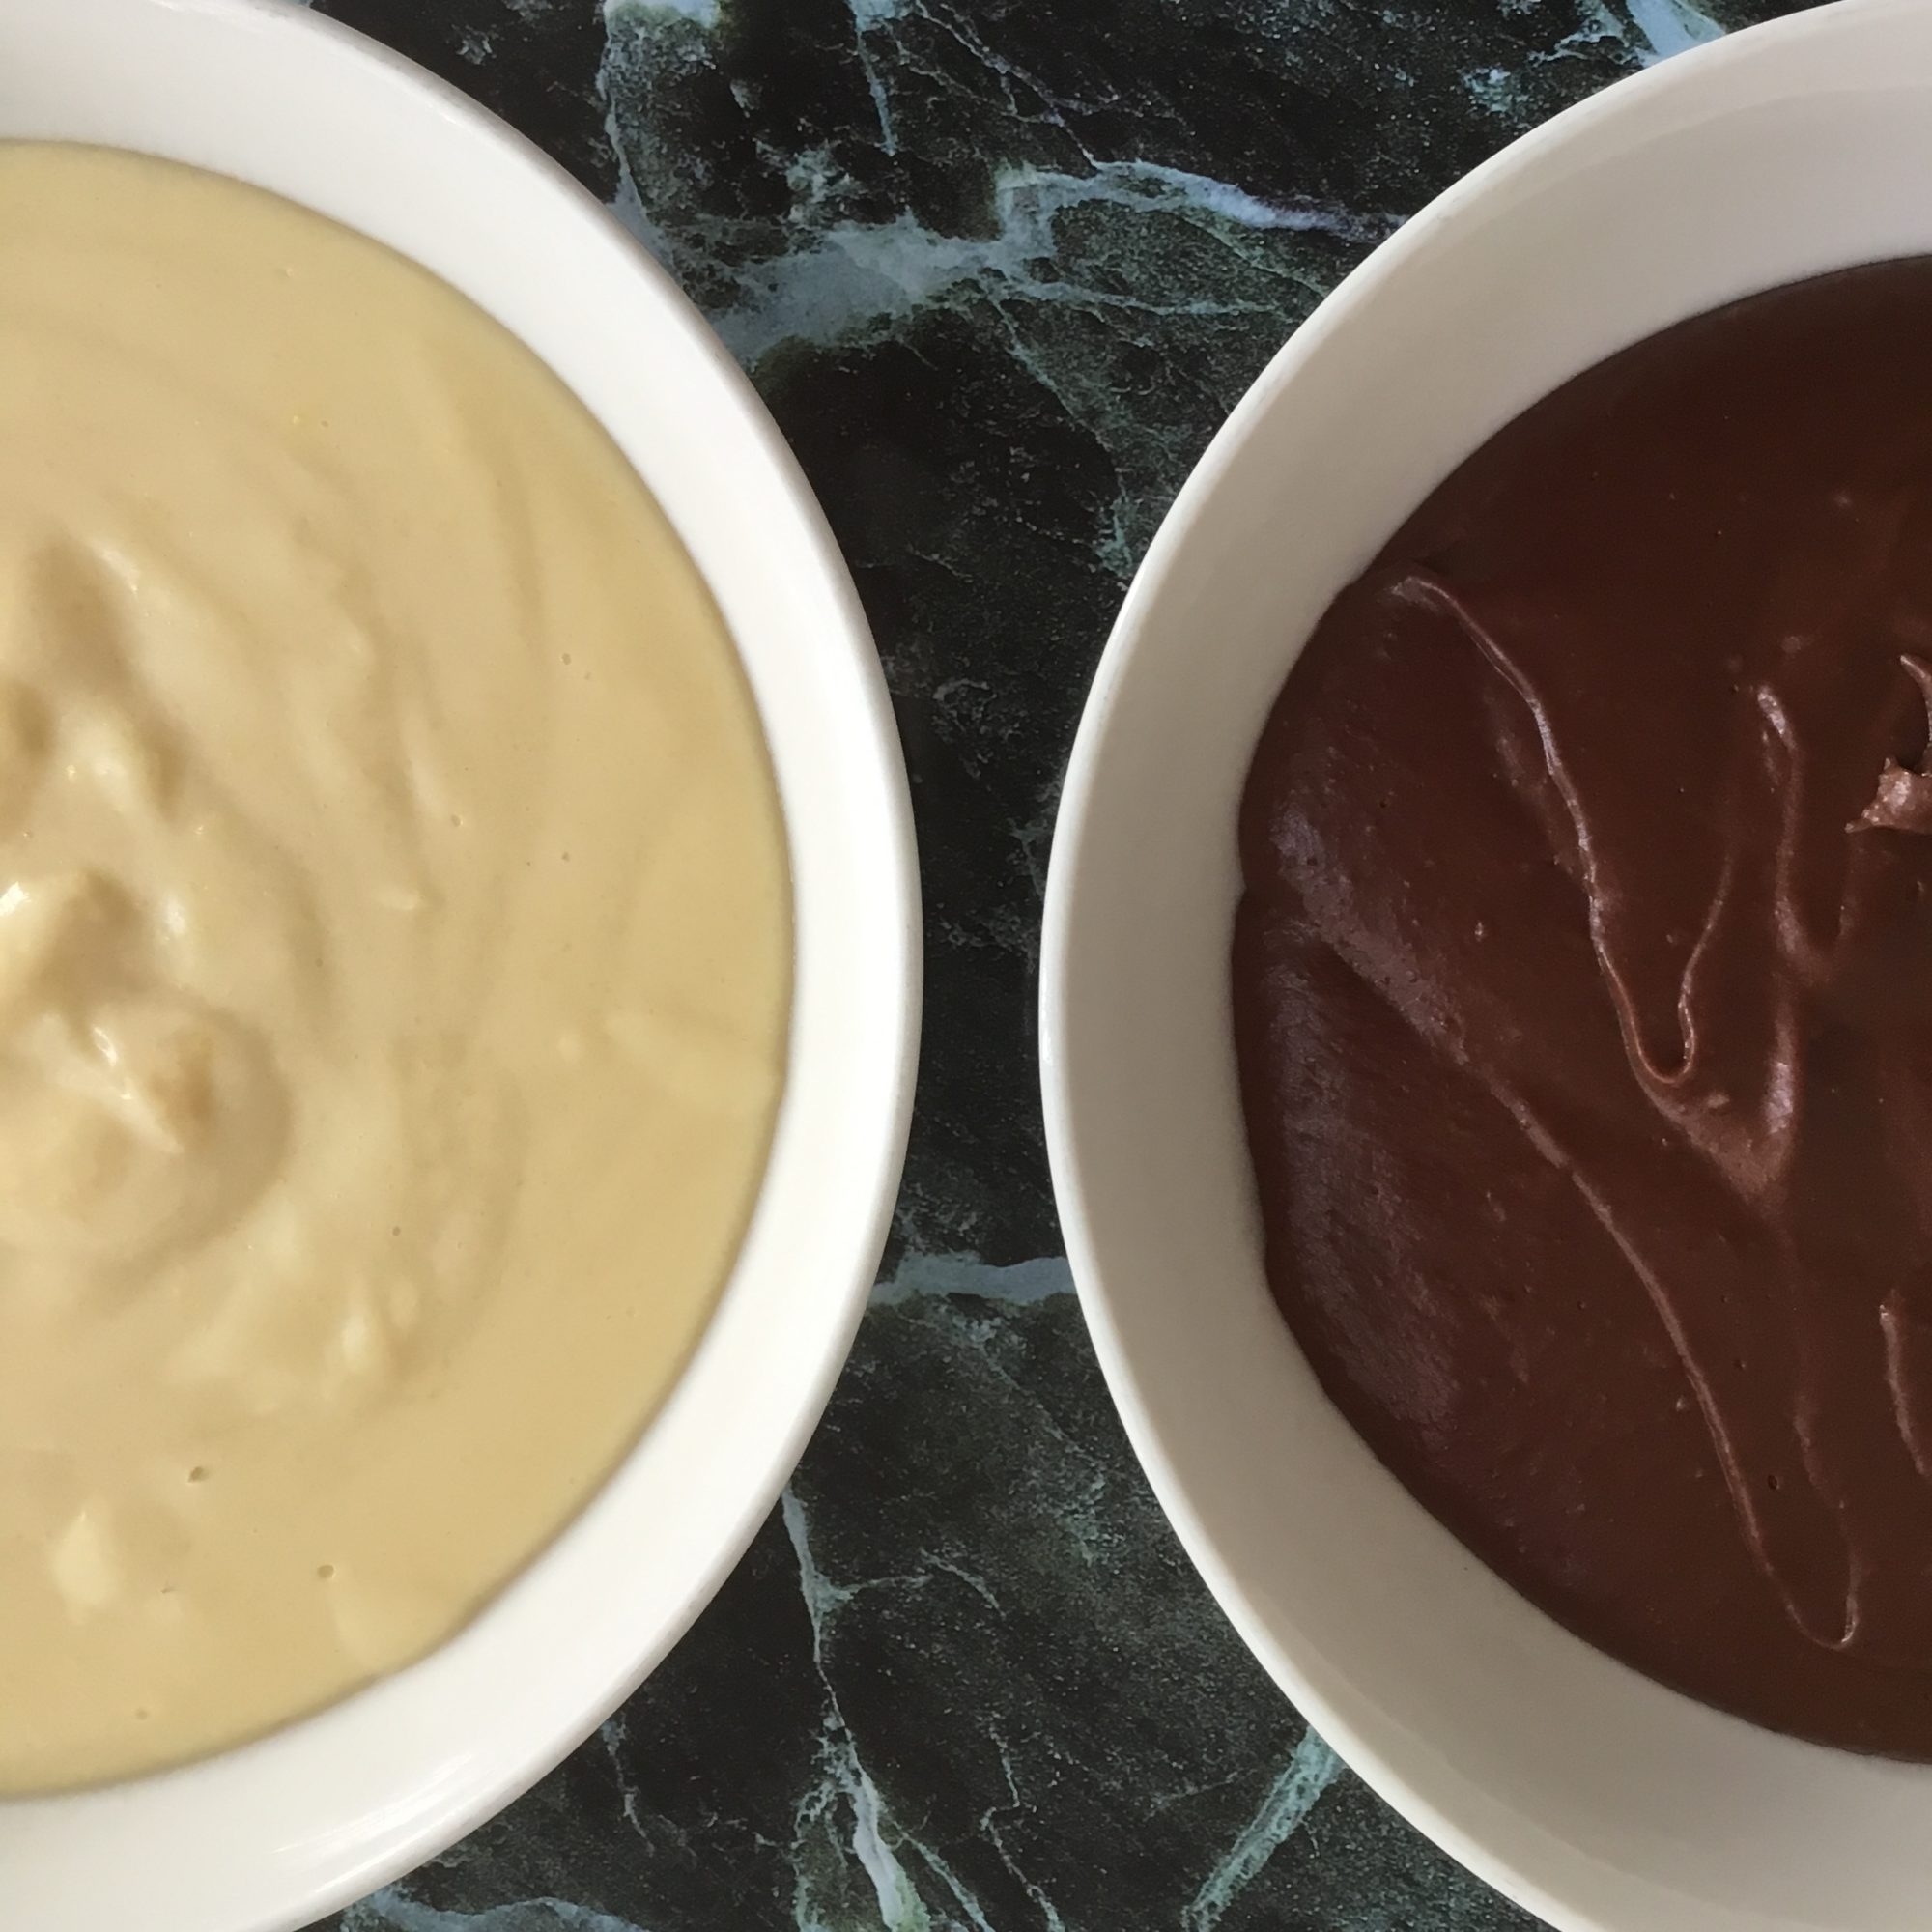 Crema pasticcera classica e al cioccolato